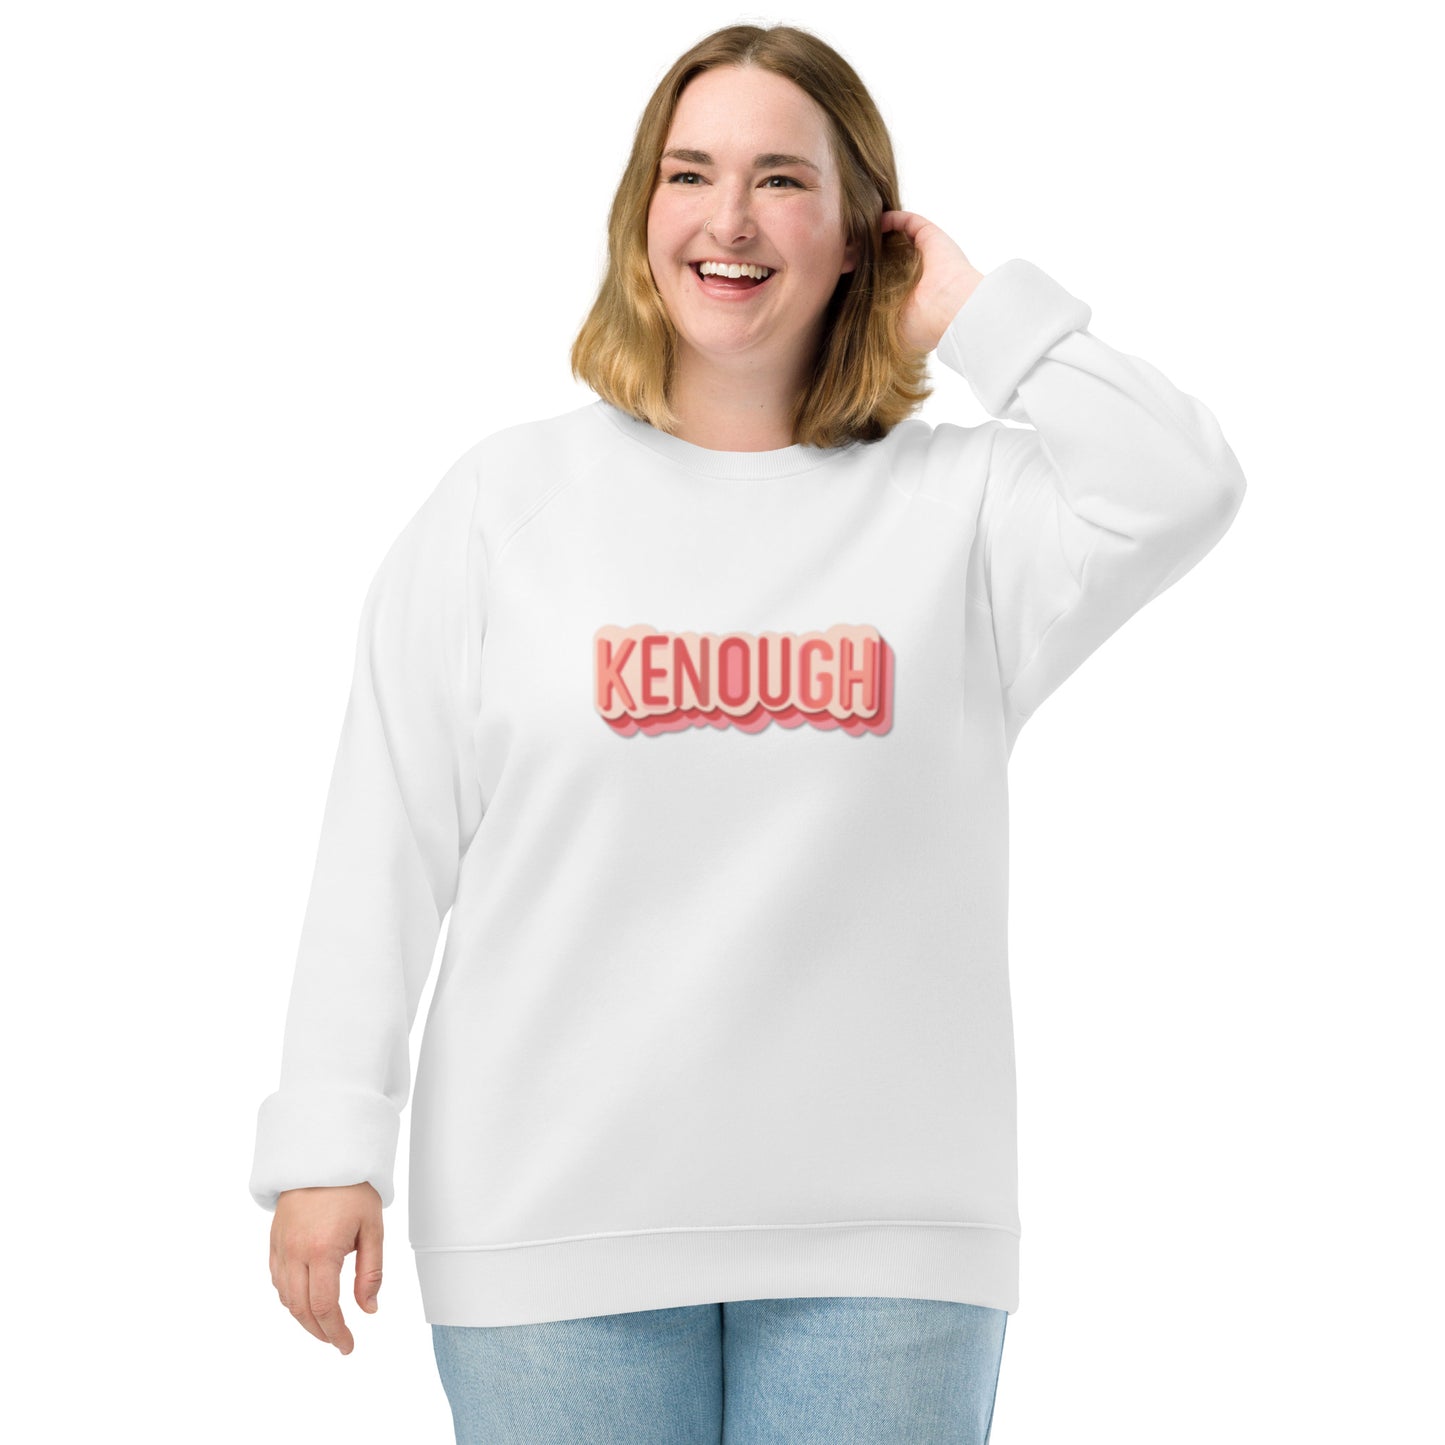 Kenough - Unisex Organic Raglan Sweatshirt